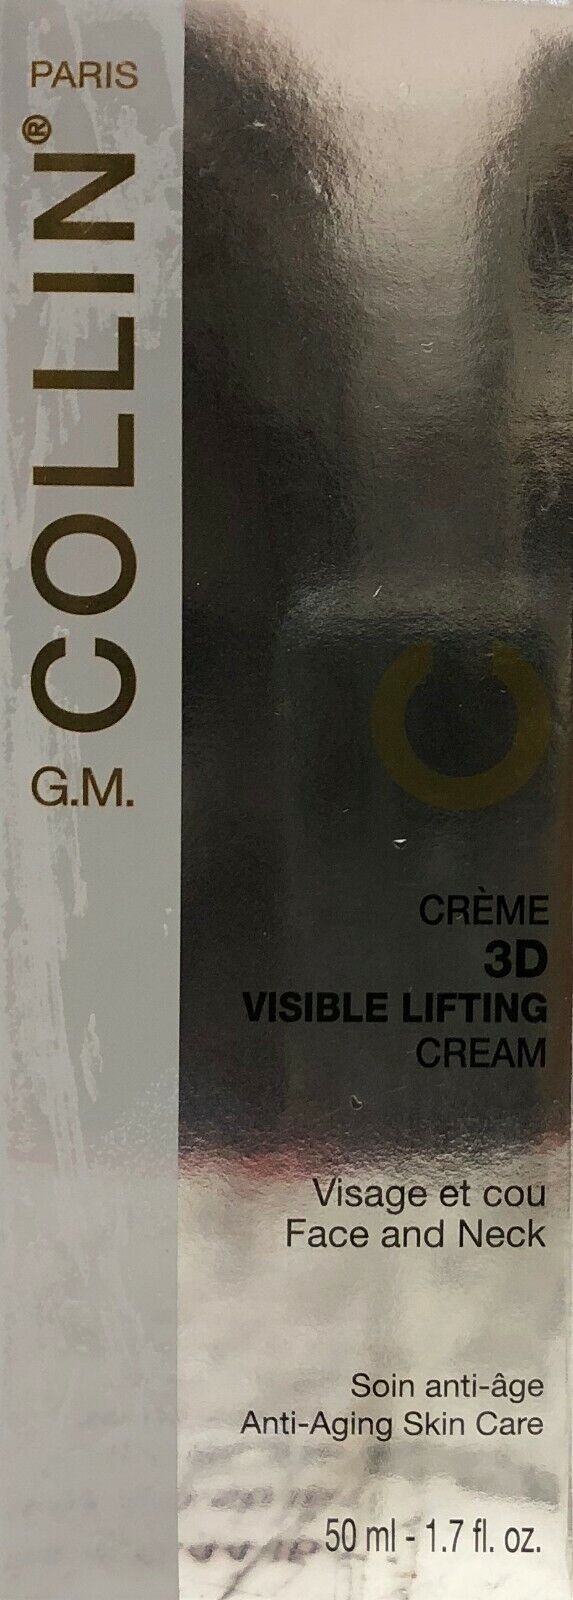 G. m.Collin 3D Sichtbar Lifting Creme - Dichtung New arrival a ML Rapid rise 50 50ml